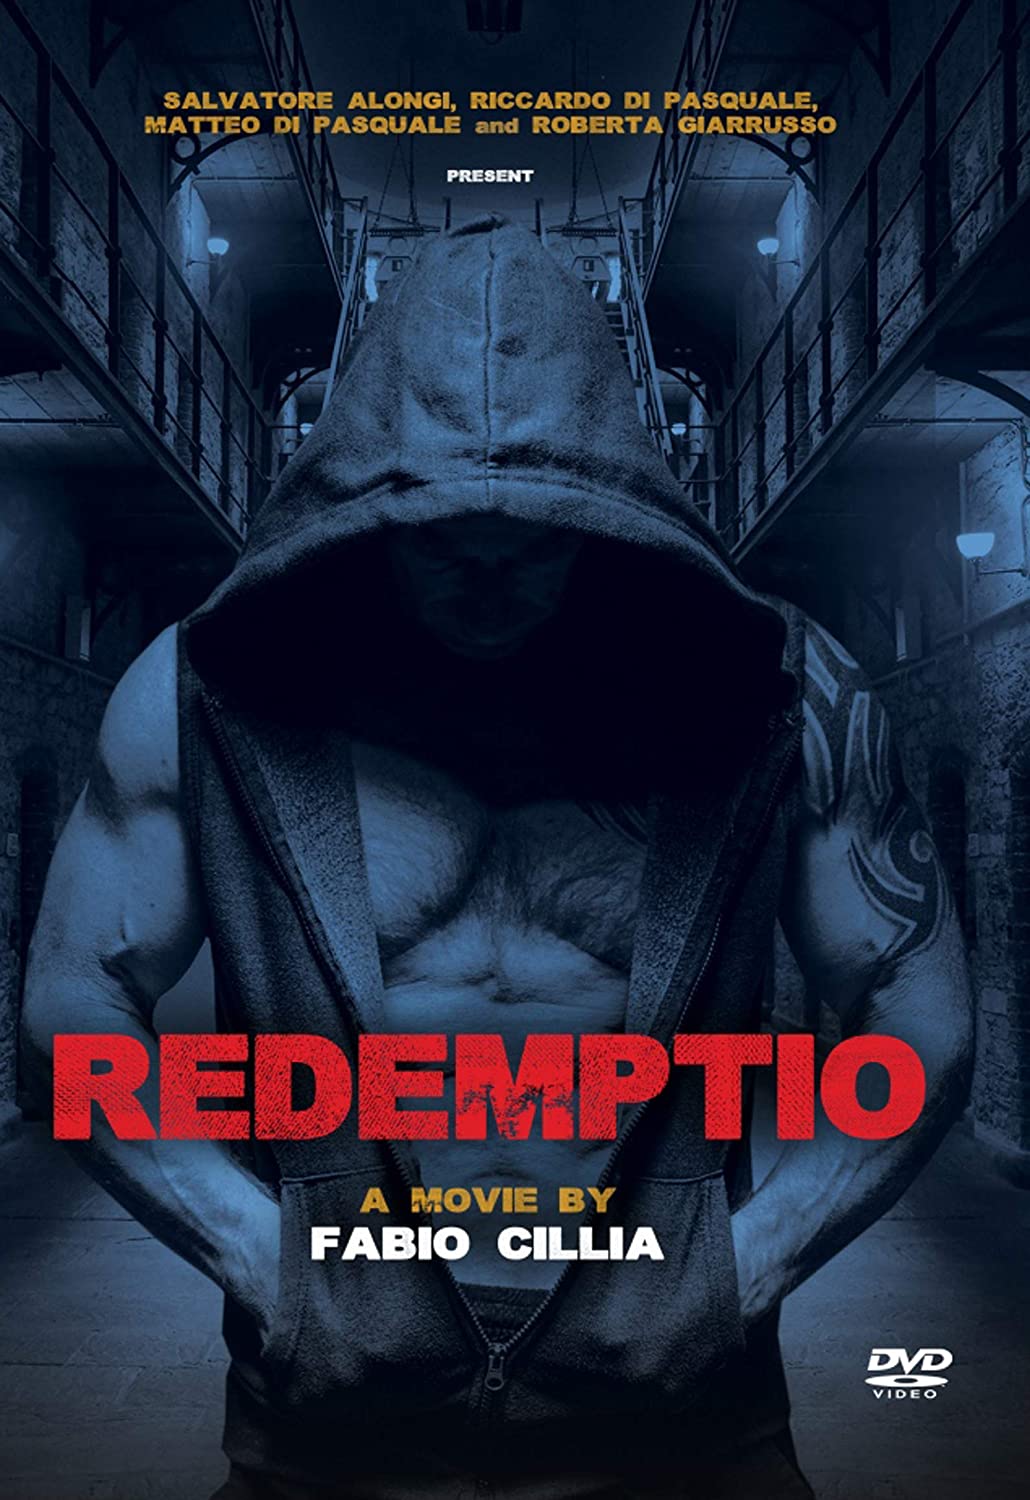 REDEMPTIO DVD